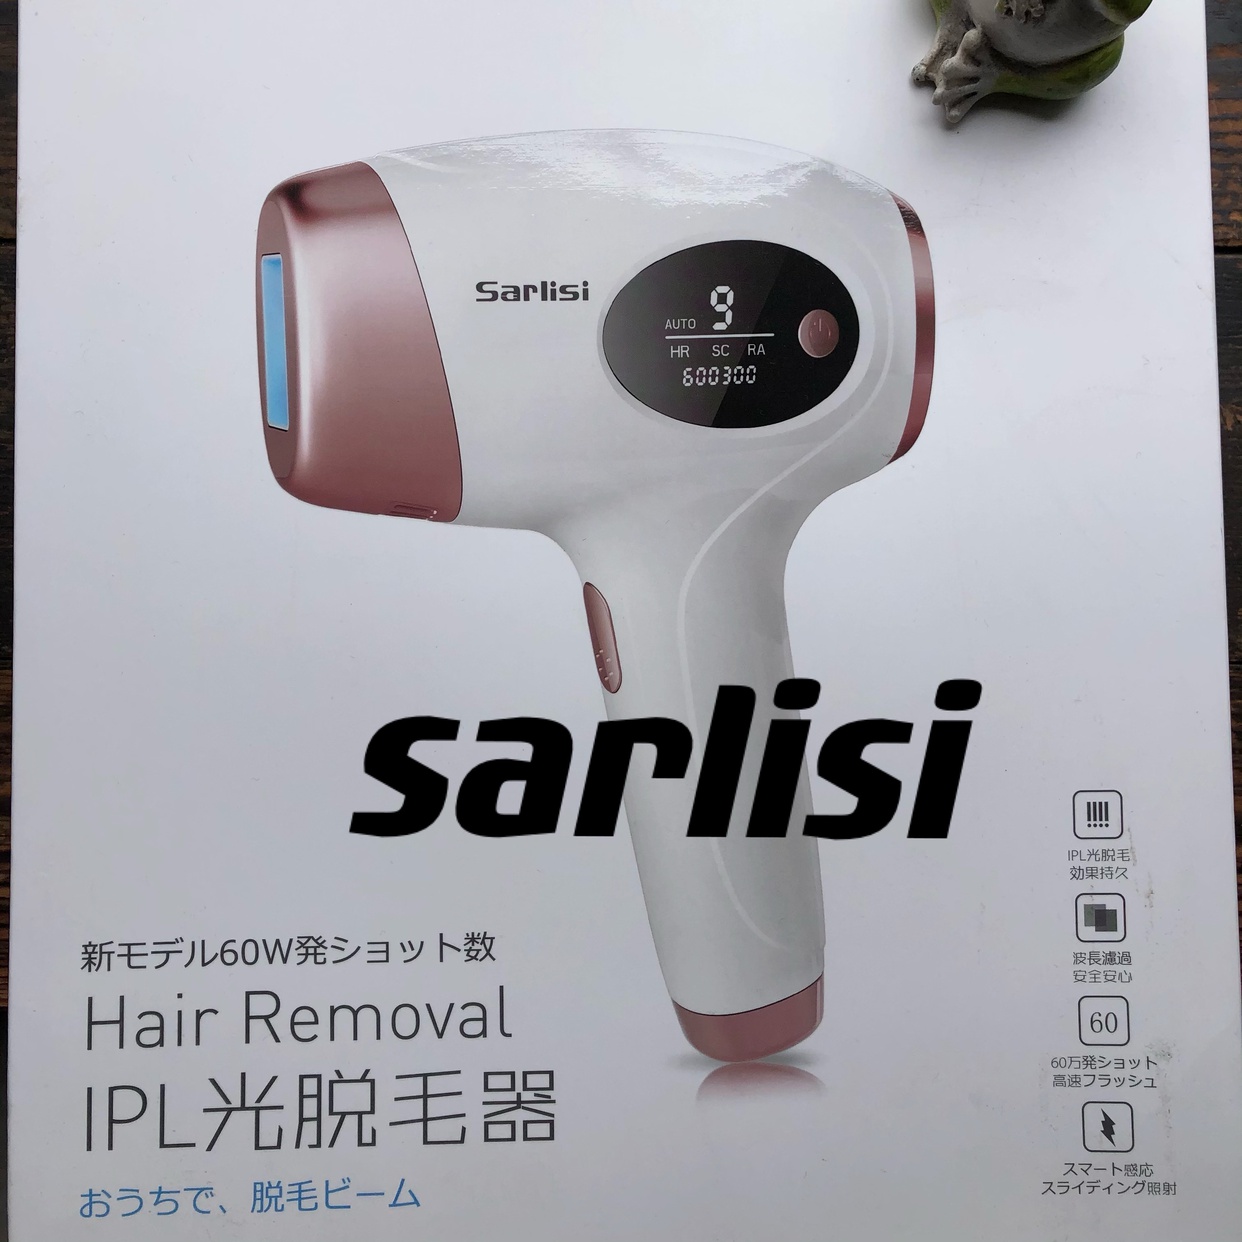 Sarlisi(サーリシ) IPL光脱毛器 AI-01に関する國唯ひろみさんの口コミ画像1